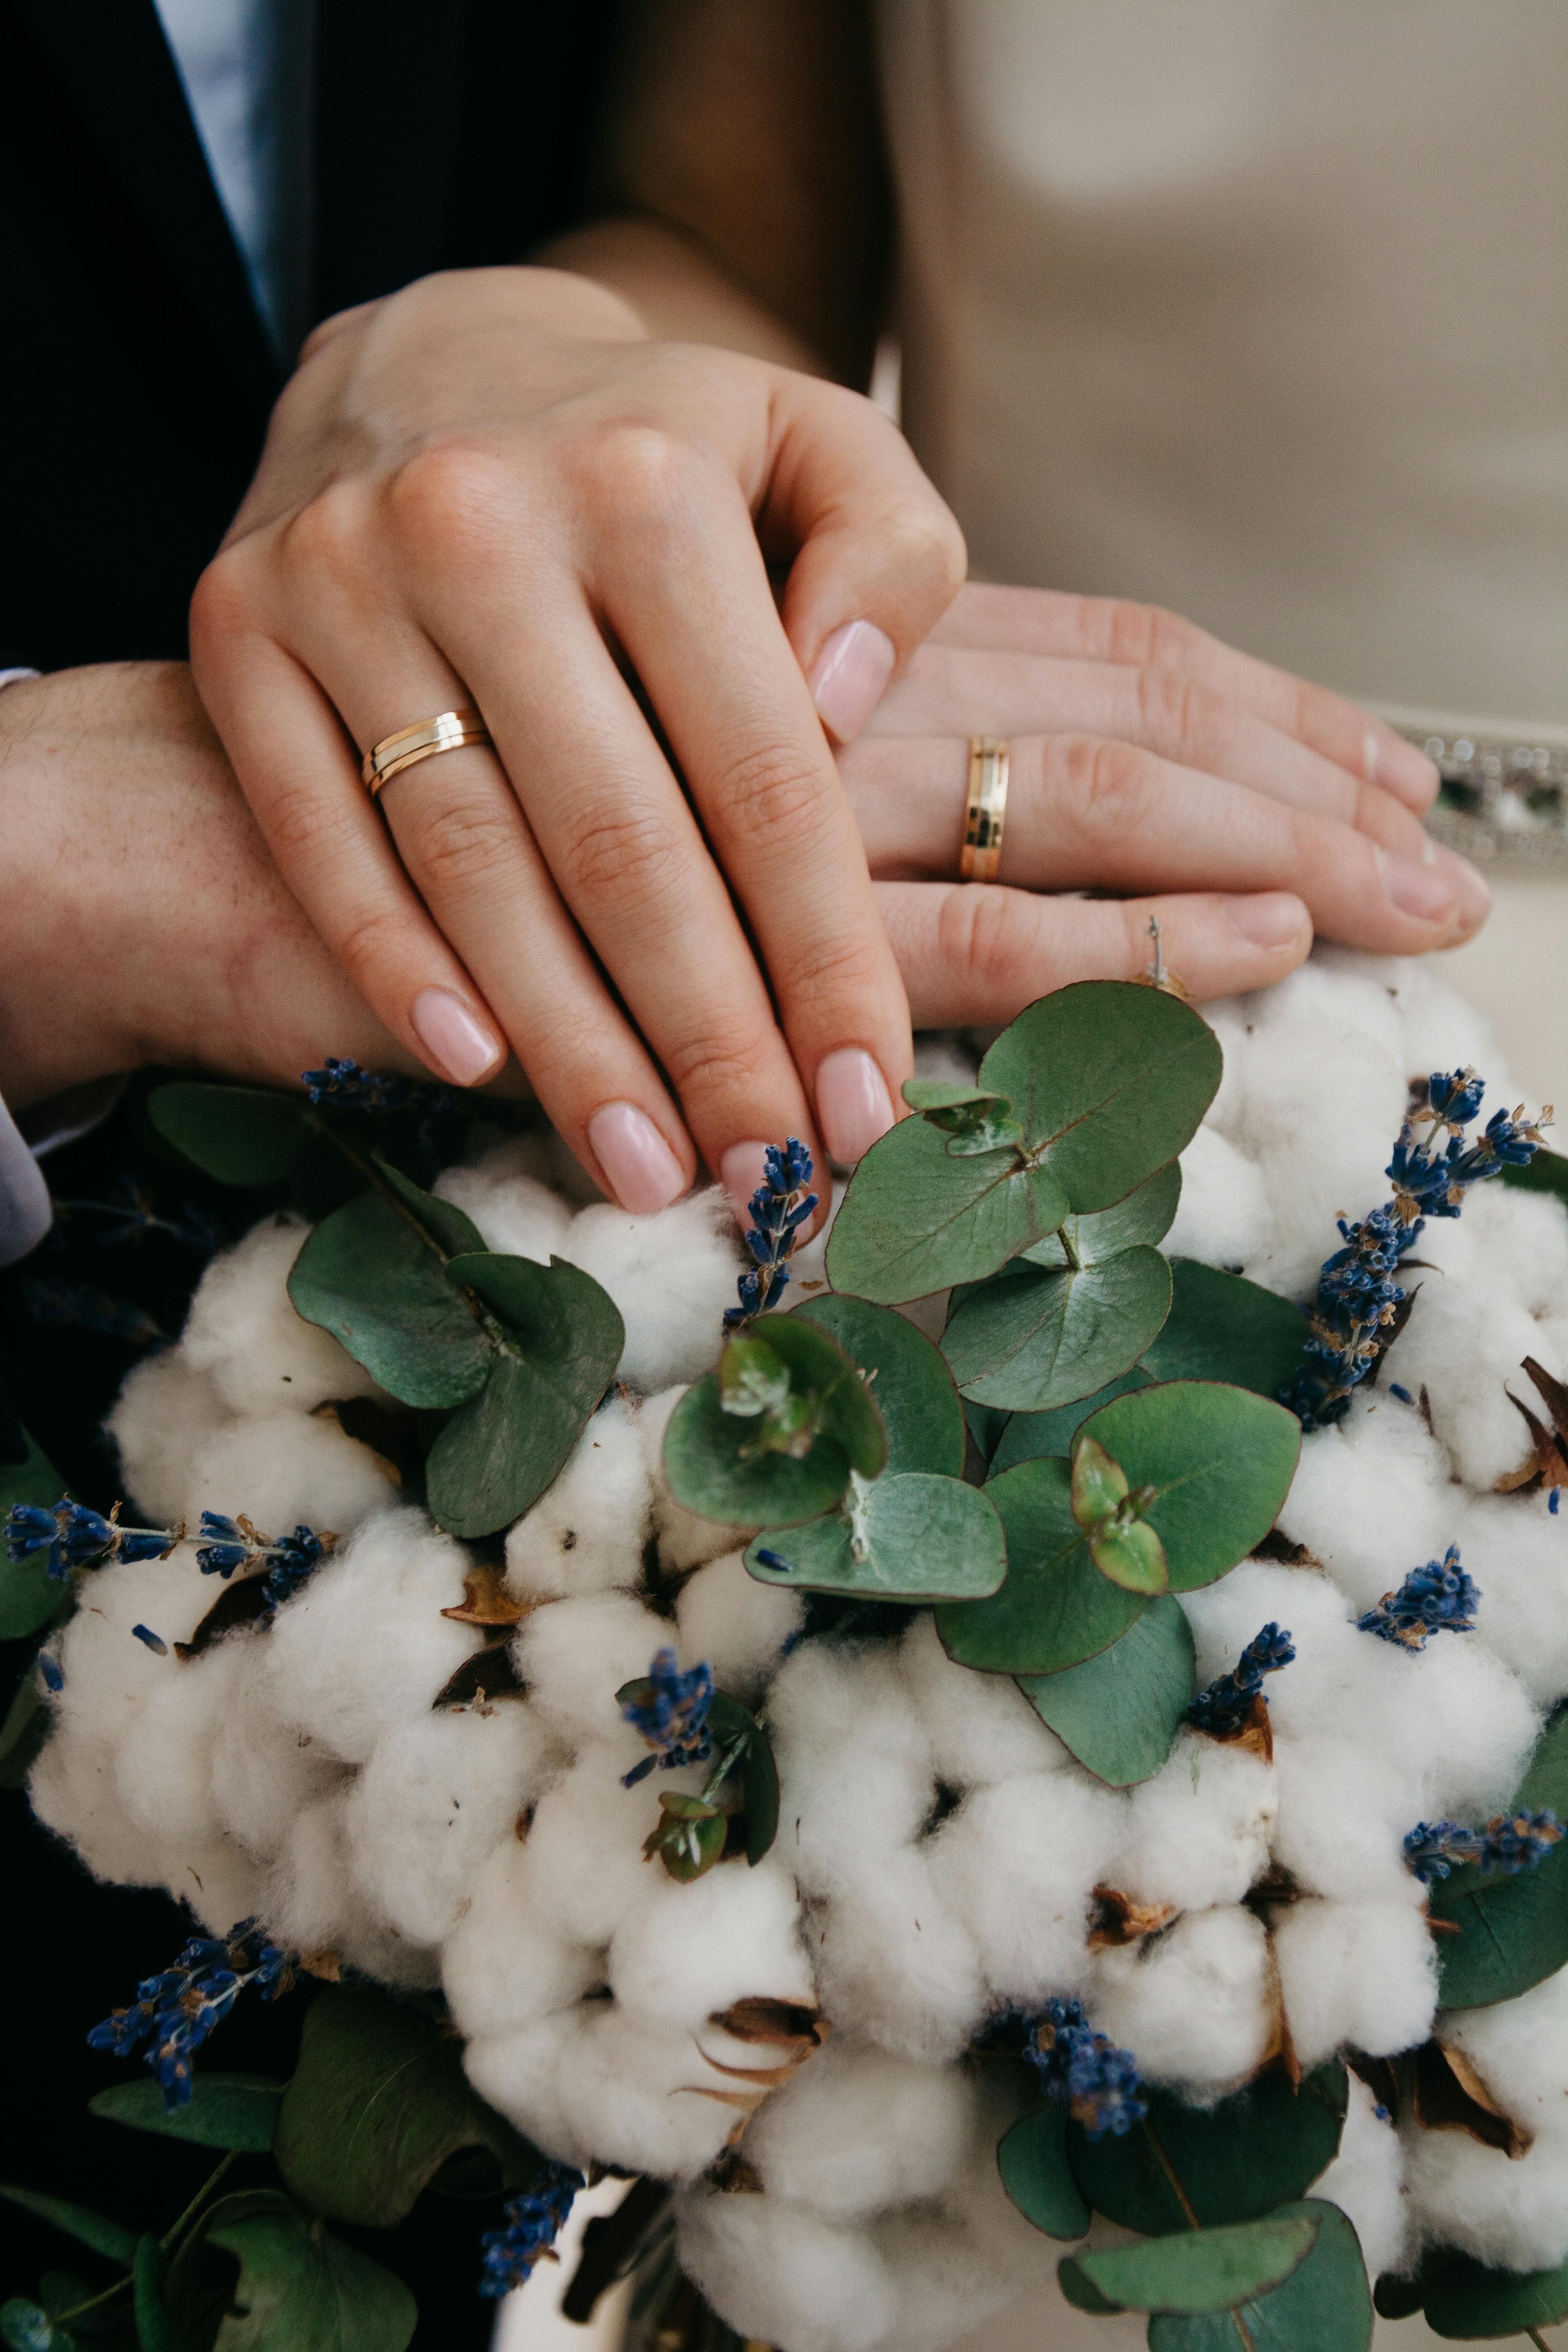 Nur zu Illustrationszwecken. Ein Paar zeigt seinen Brautstrauß und seine Ringe | Quelle: Pexels